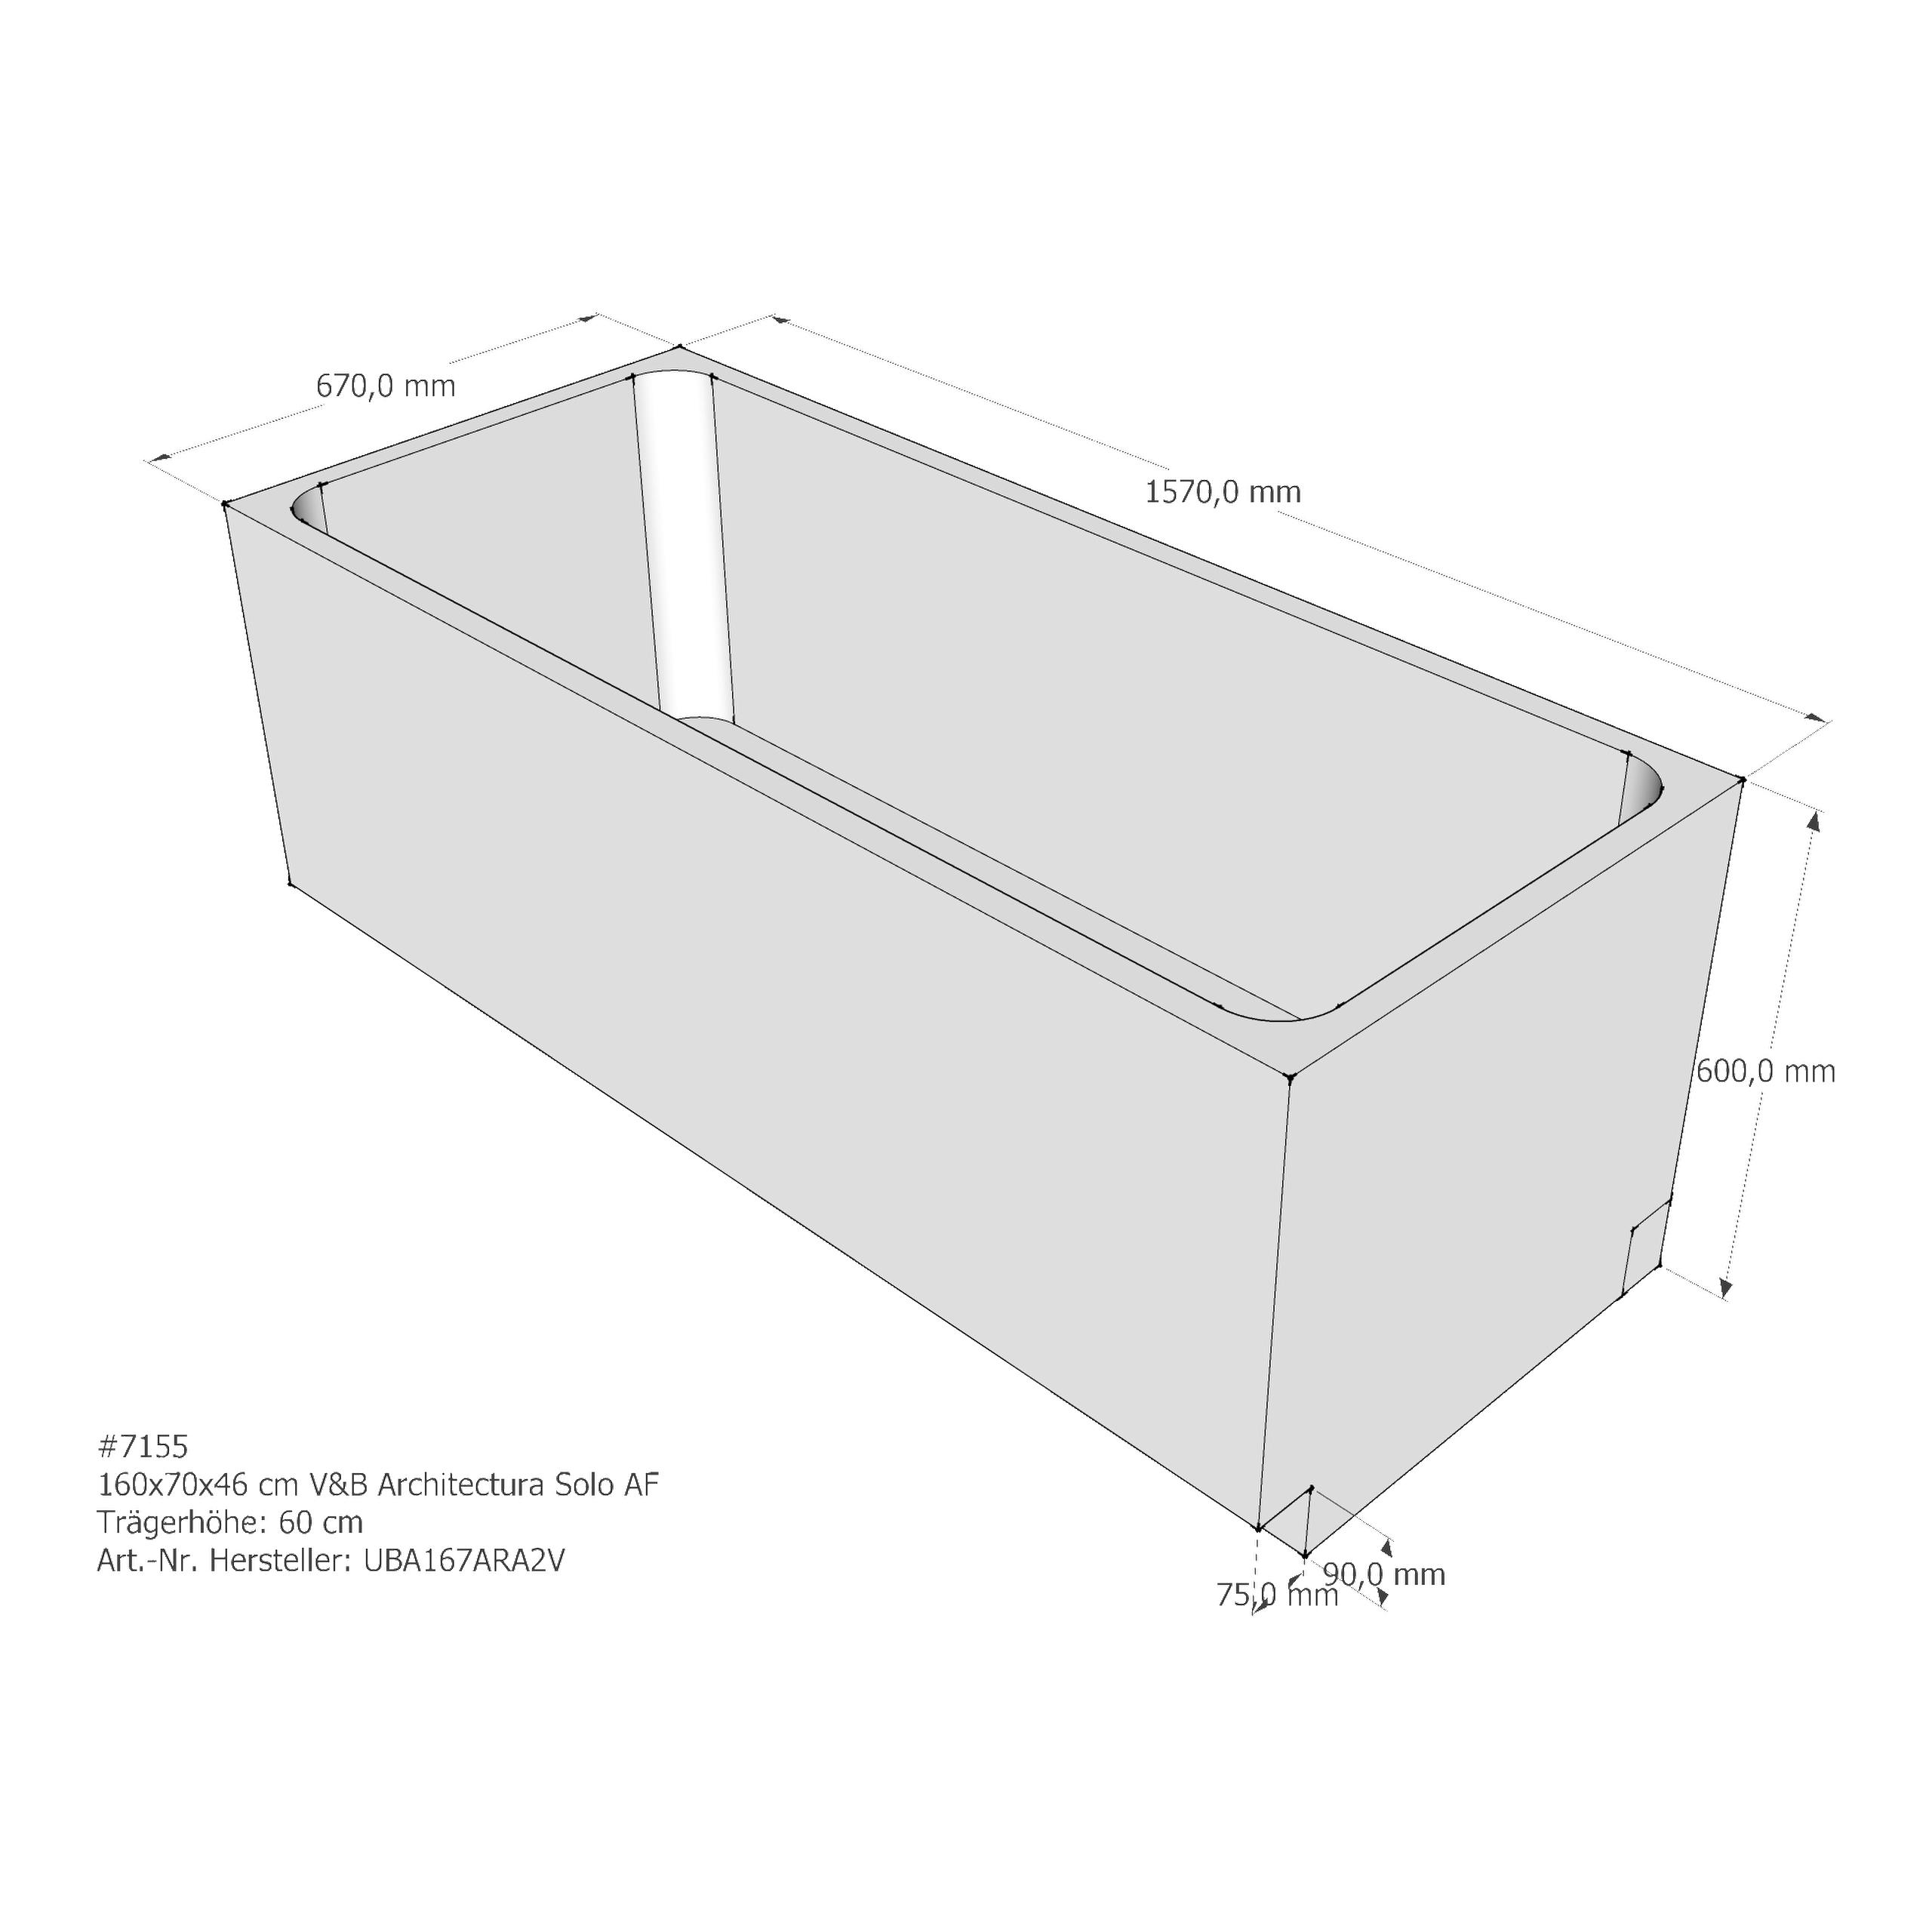 Badewannenträger für Villeroy & Boch Architectura (Omnia) 160 × 70 × 46 cm